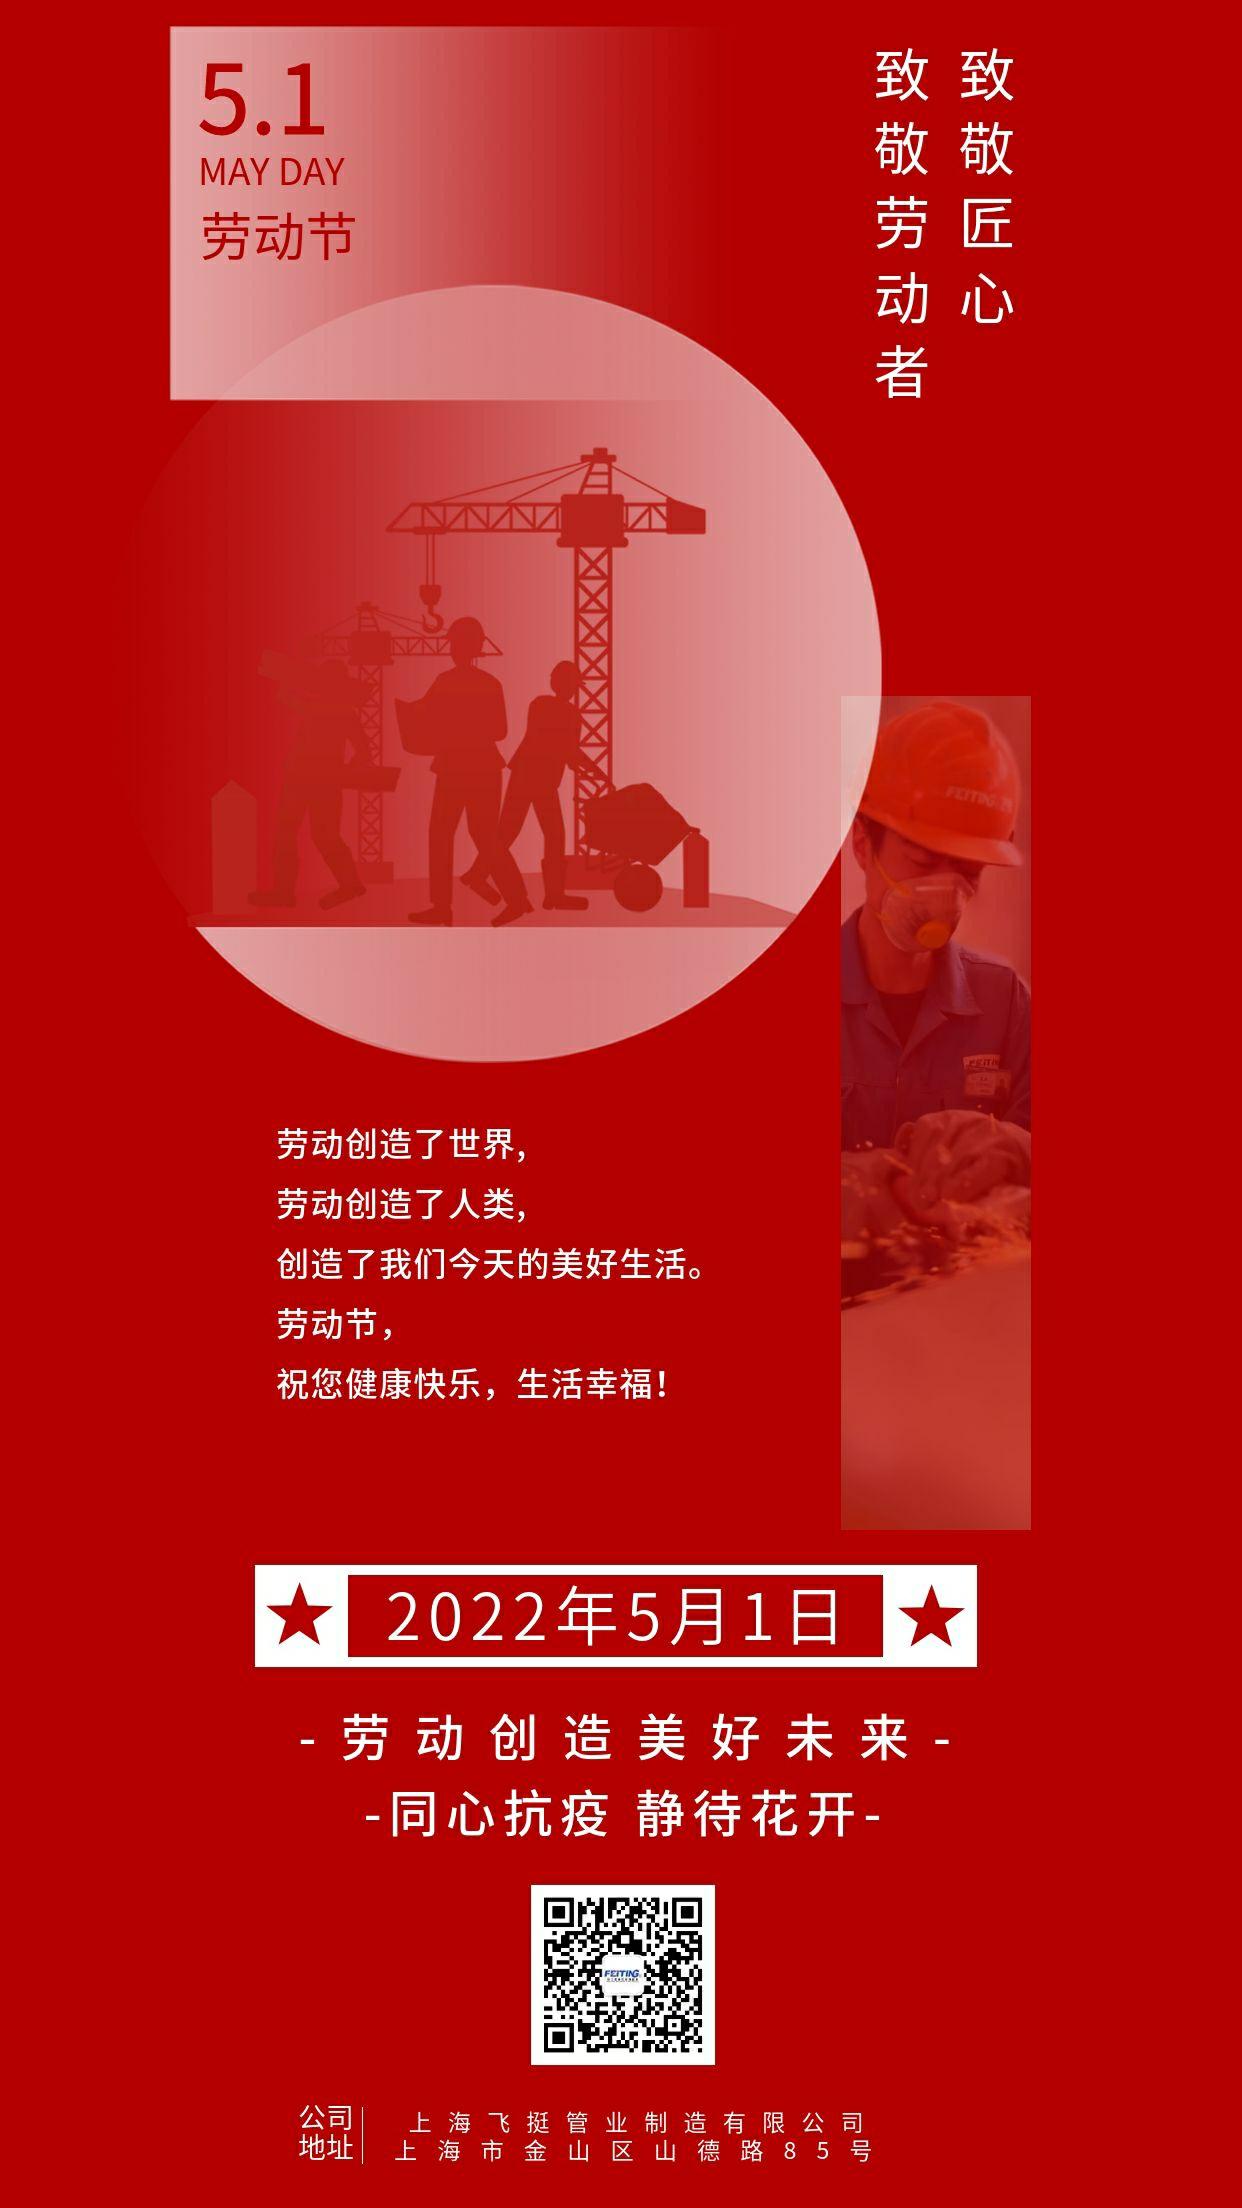 简约创意五一劳动节宣传手机海报 (4)_精灵看图.jpg